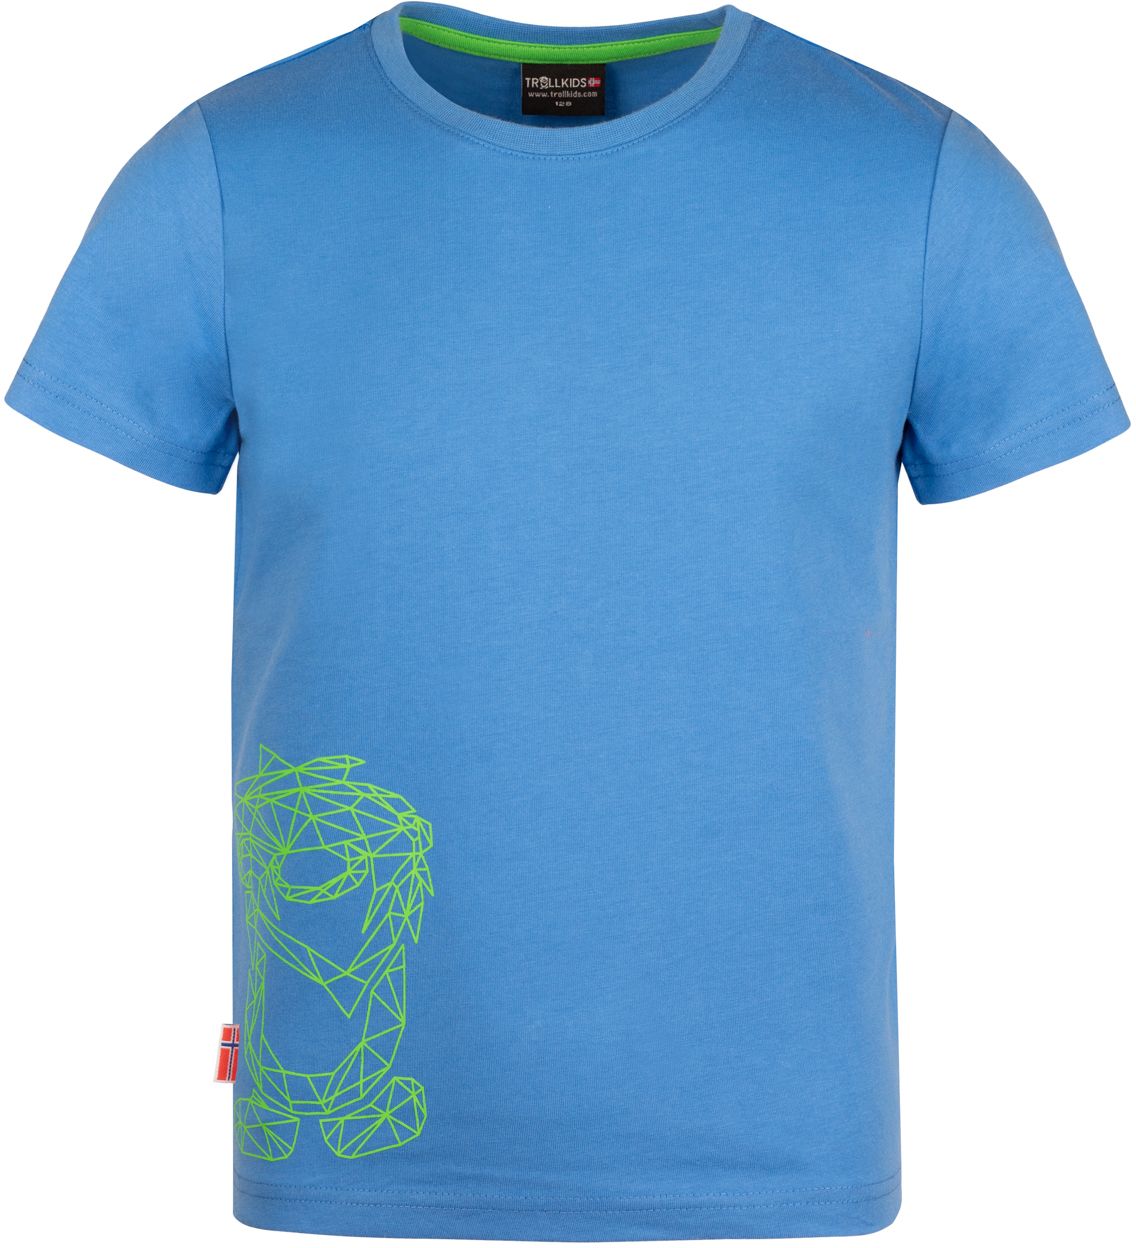 Trollkids Oppland T-Shirt UPF 30+ Medium Blue/Green